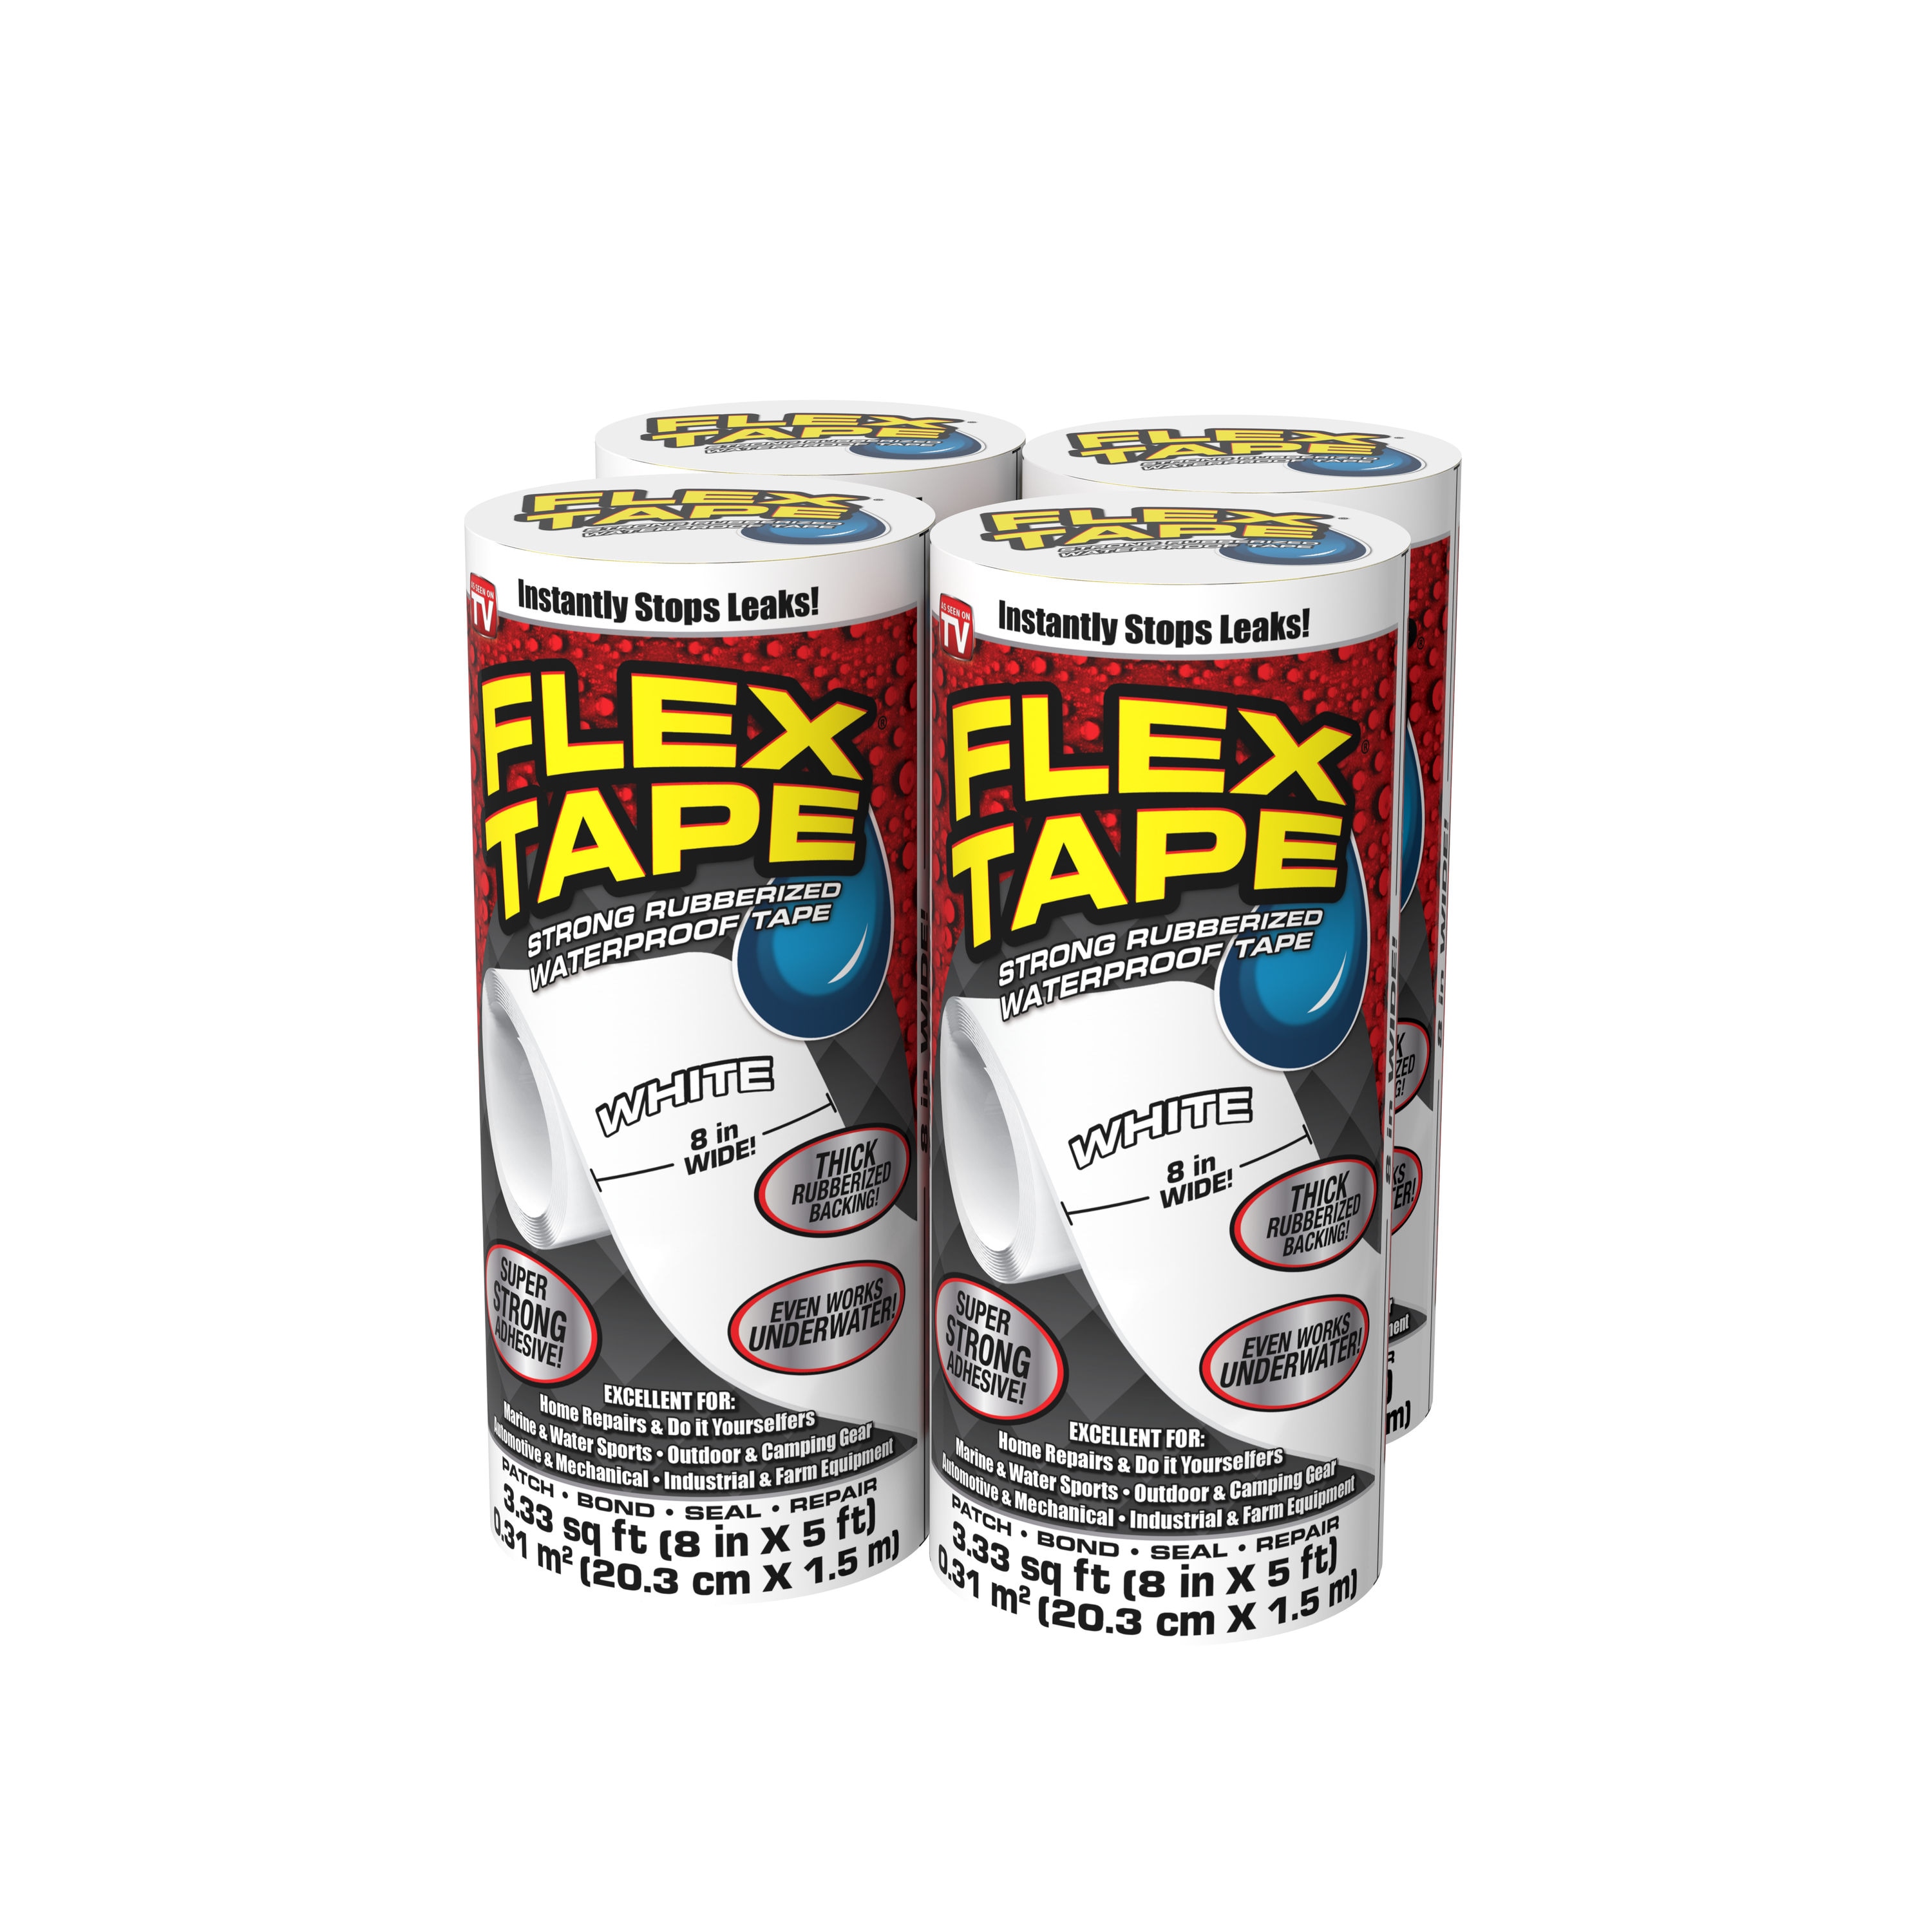 Flex Super Wide Duct Tape